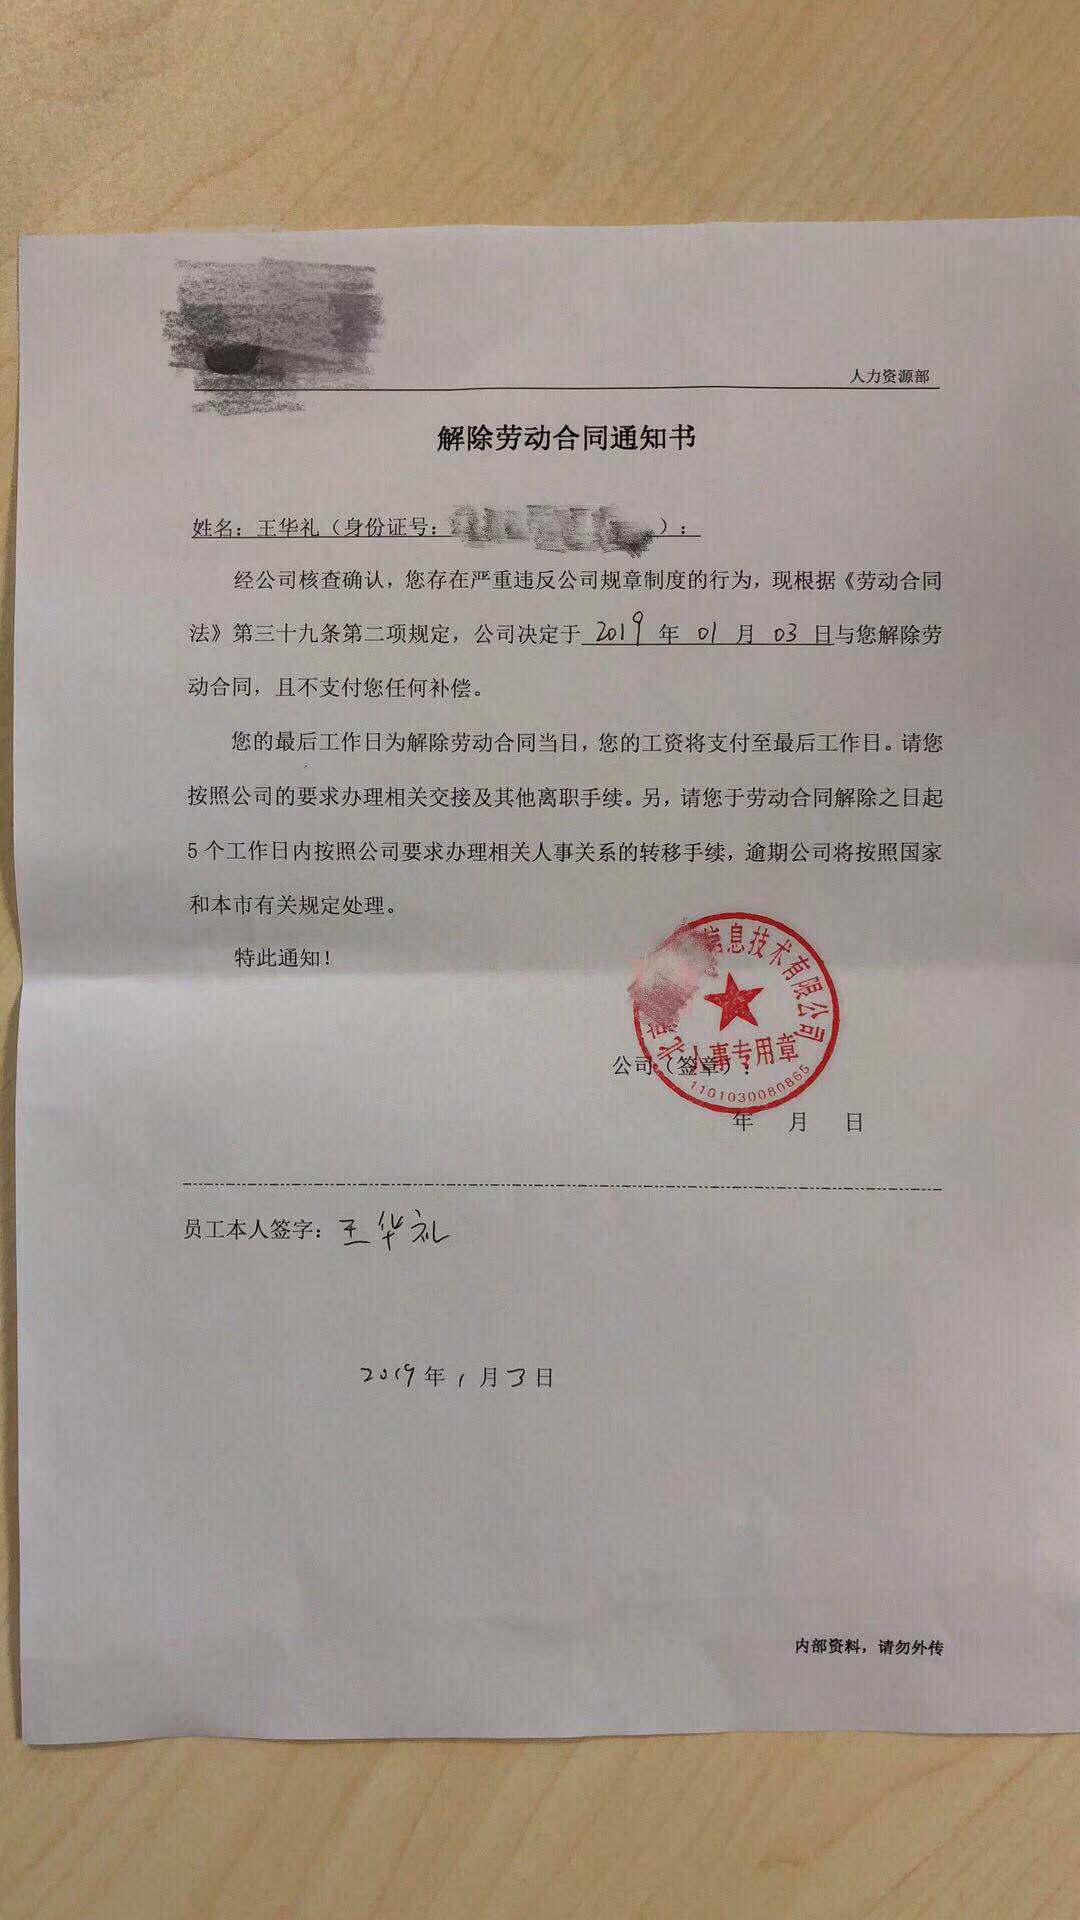 王華禮的m解除勞動合同通知書nC受訪者供圖